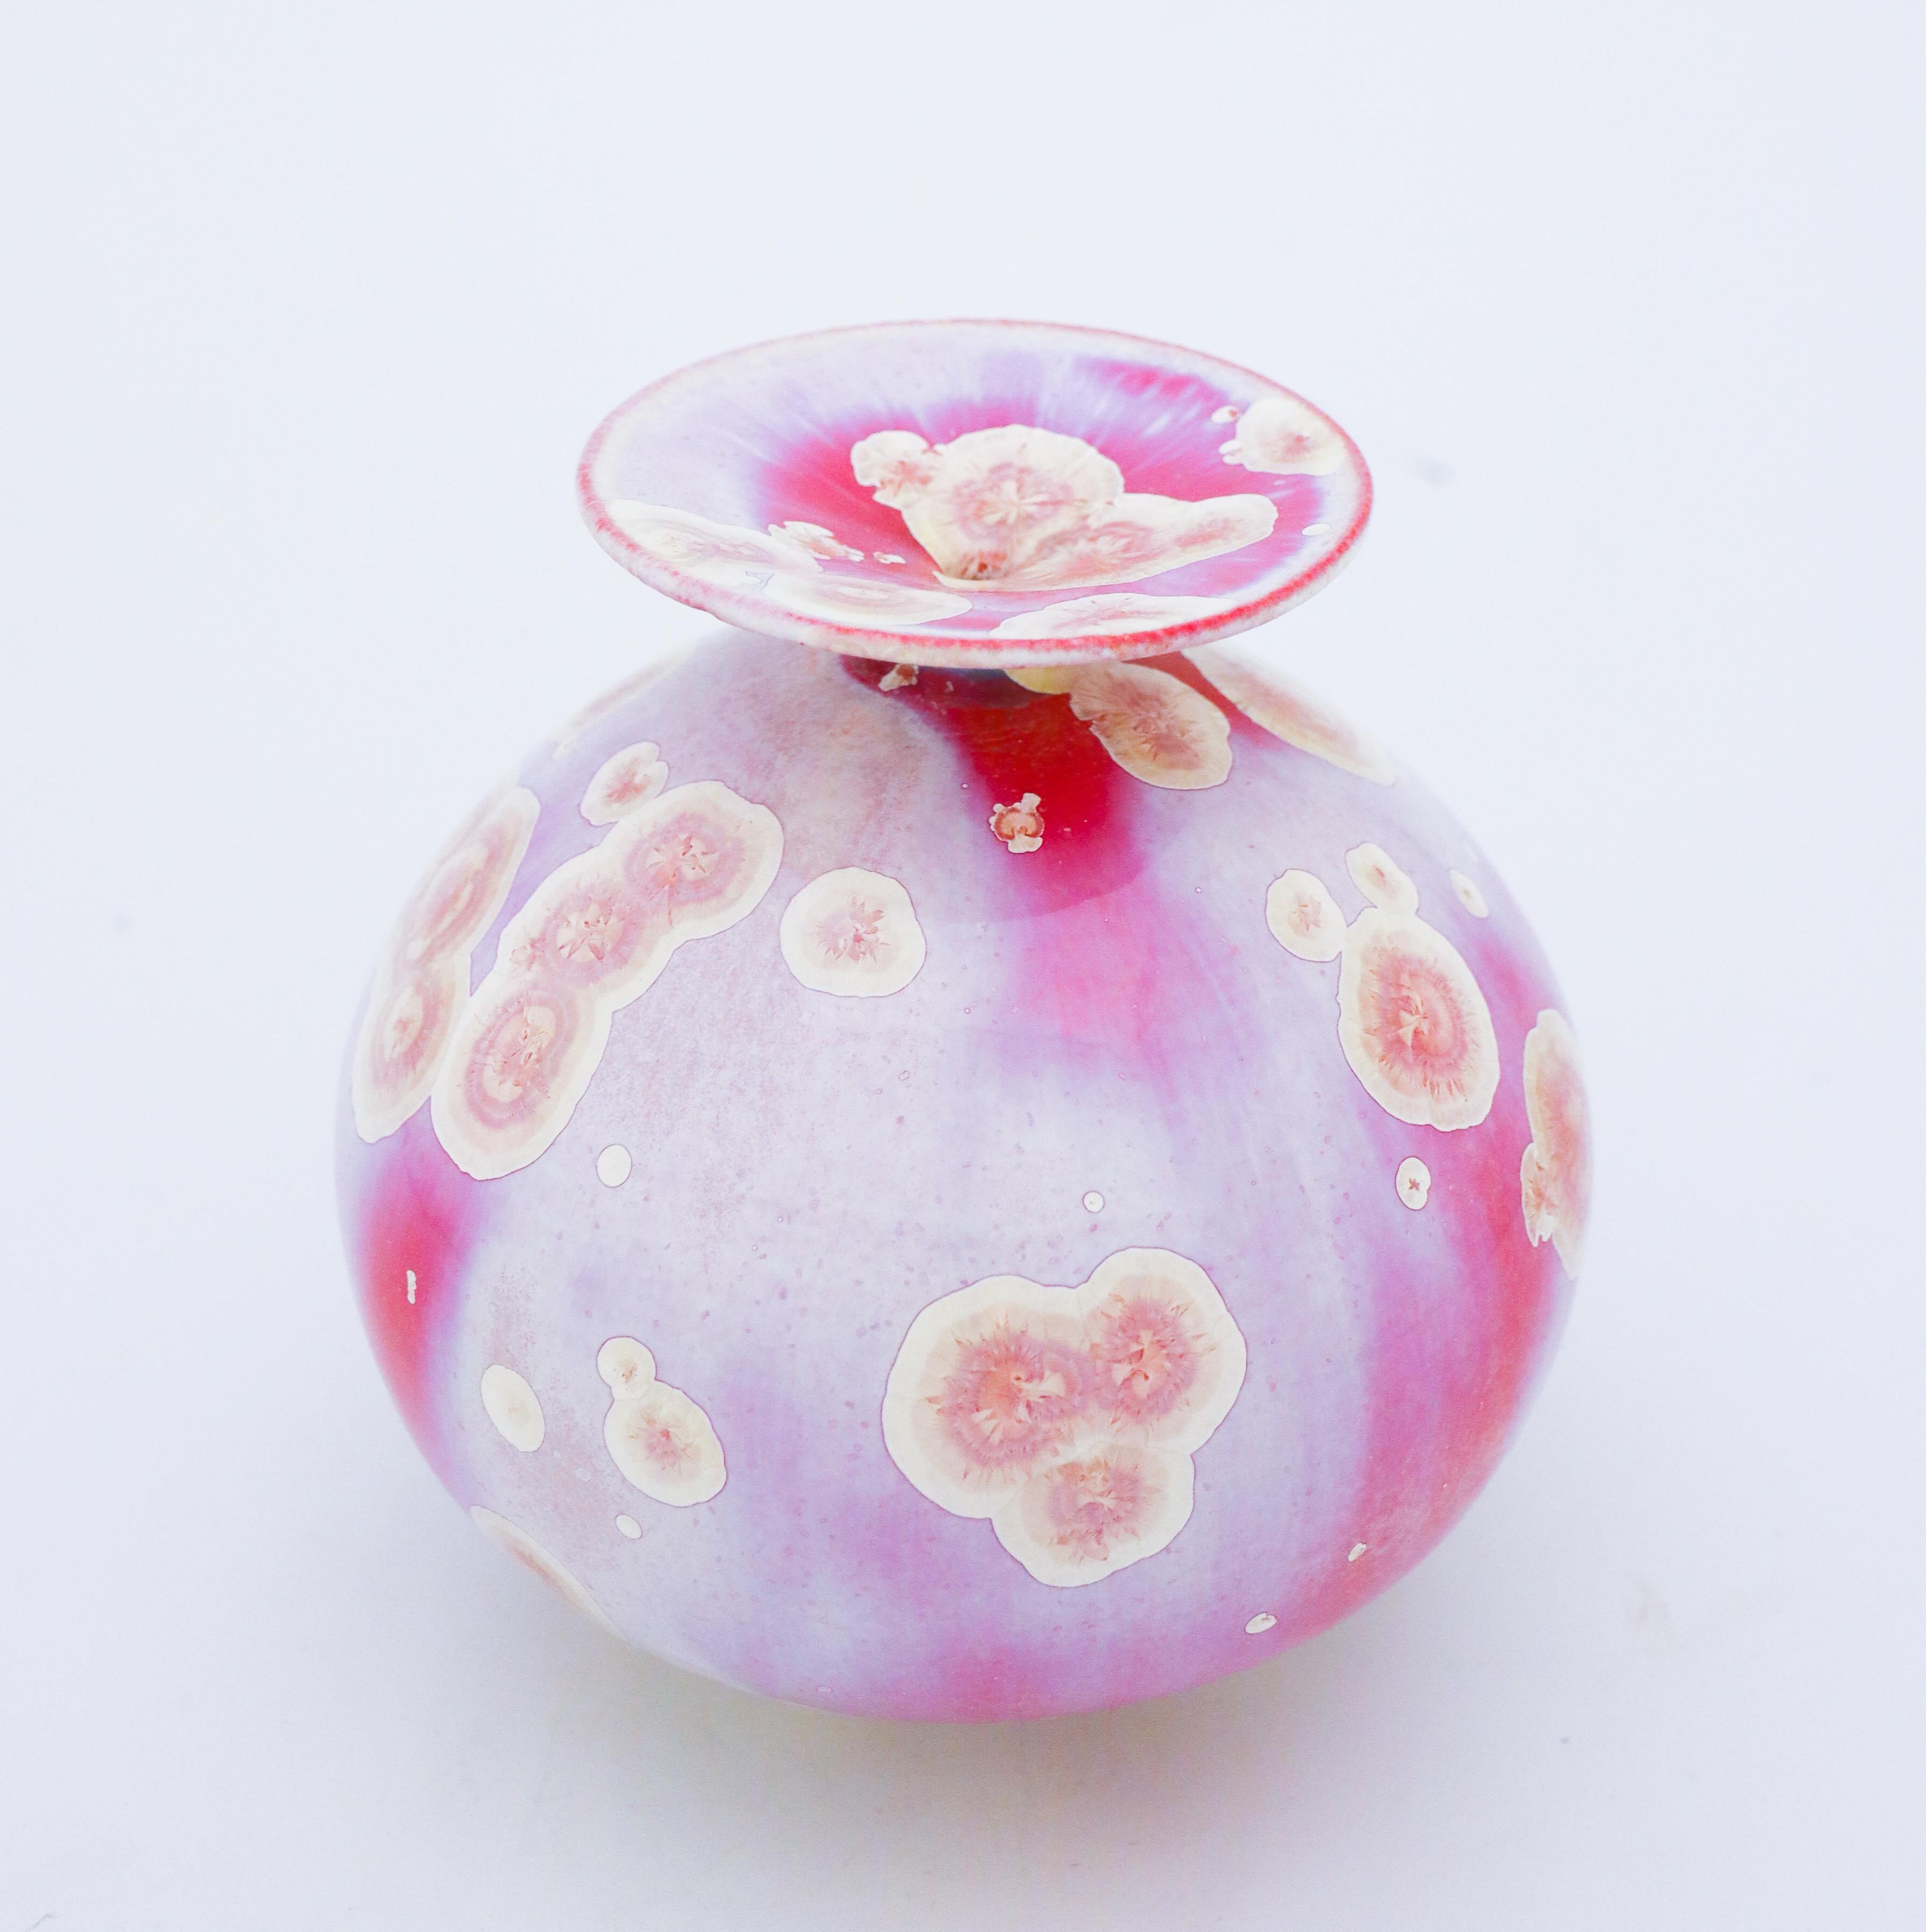 Scandinavian Modern Isak Isaksson, Pink Vase with Crystalline Glaze, Contemporary Ceramic, Sweden.